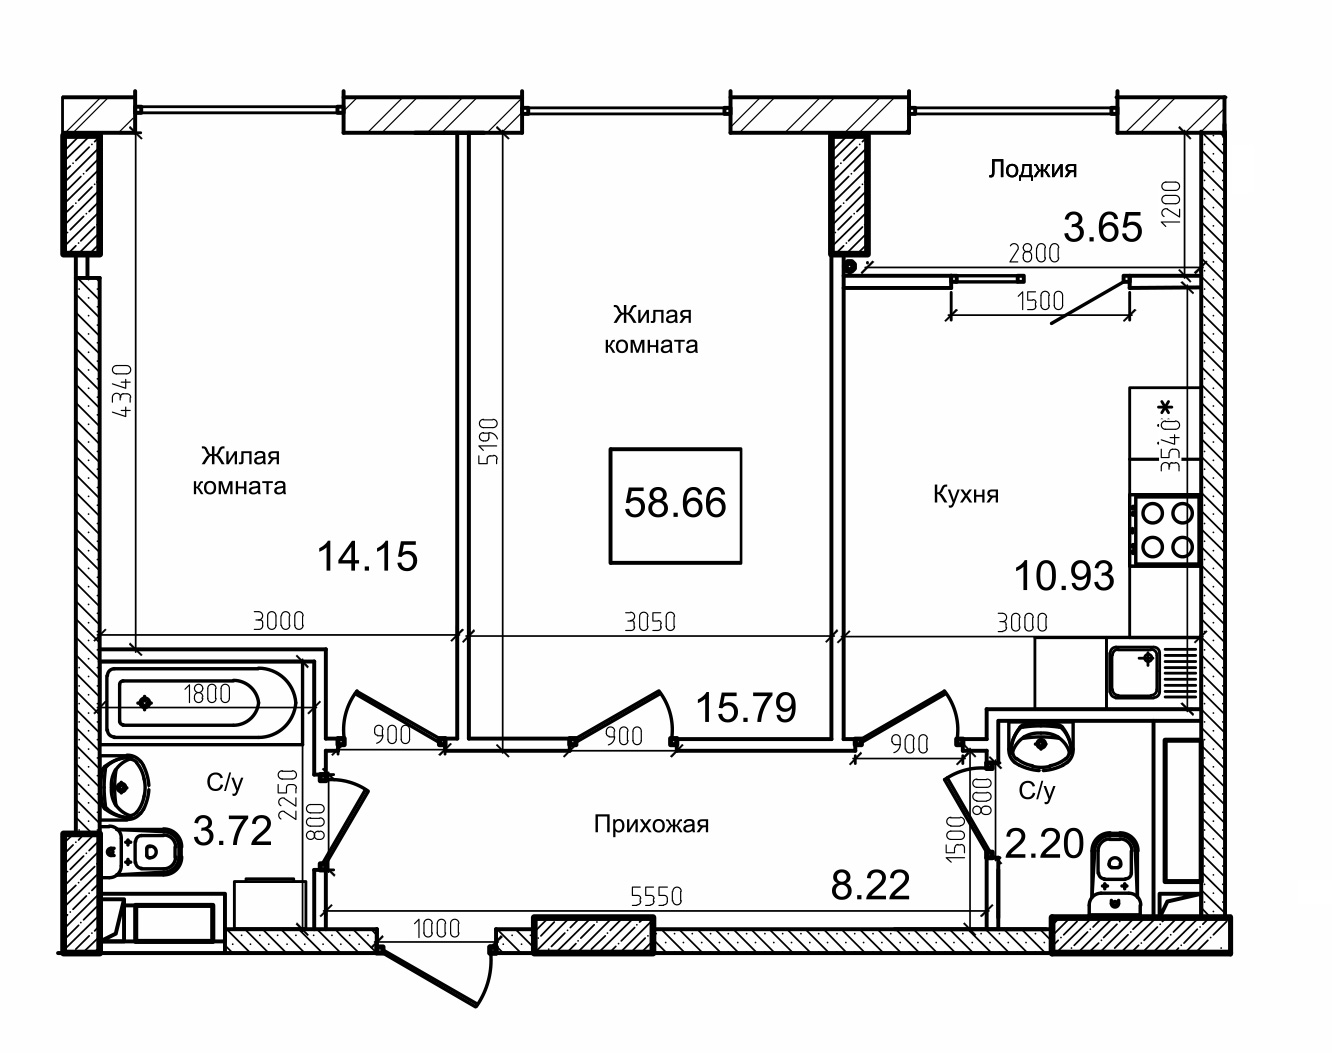 Планування 2-к квартира площею 57.1м2, AB-09-11/00006.